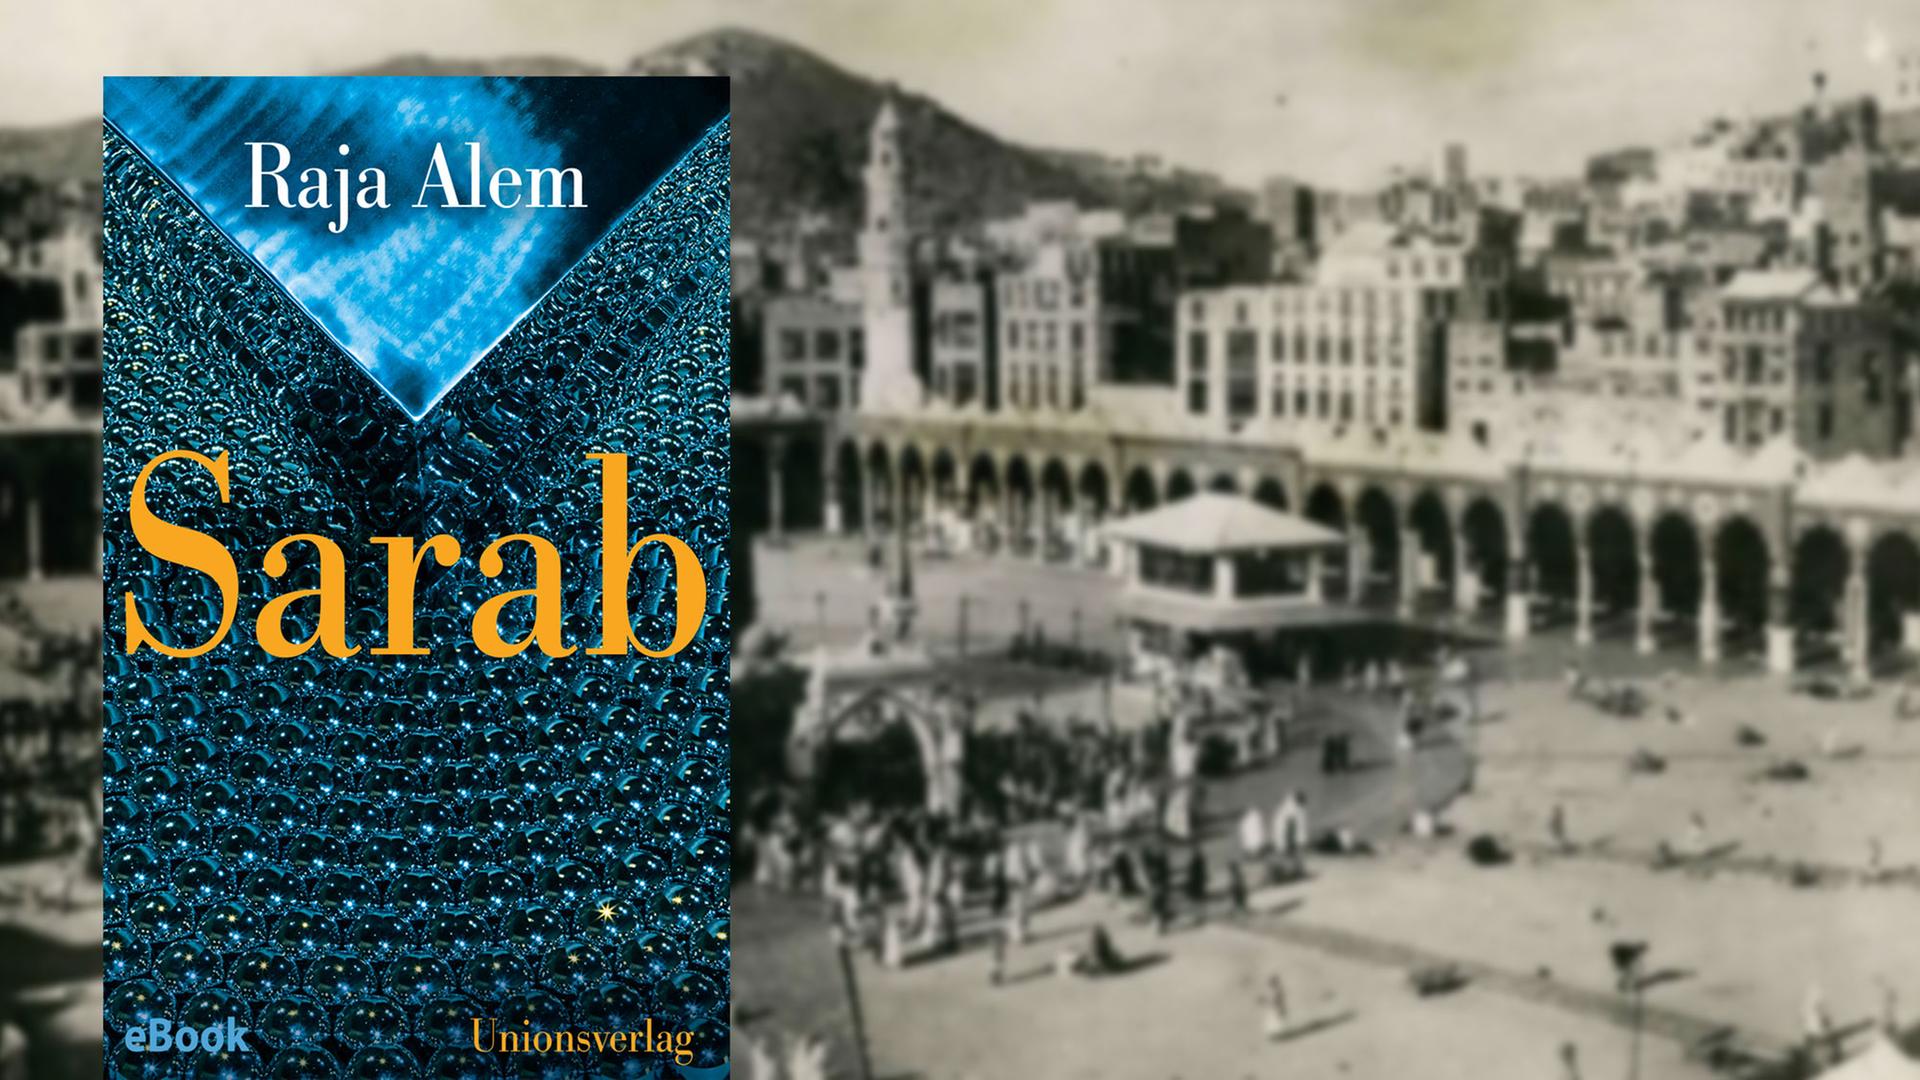 Cover des Romans "Sarab" von Raja Alem, im Hintergrund: Die Kaaba in Mekka in einer Aufnahme von 1960